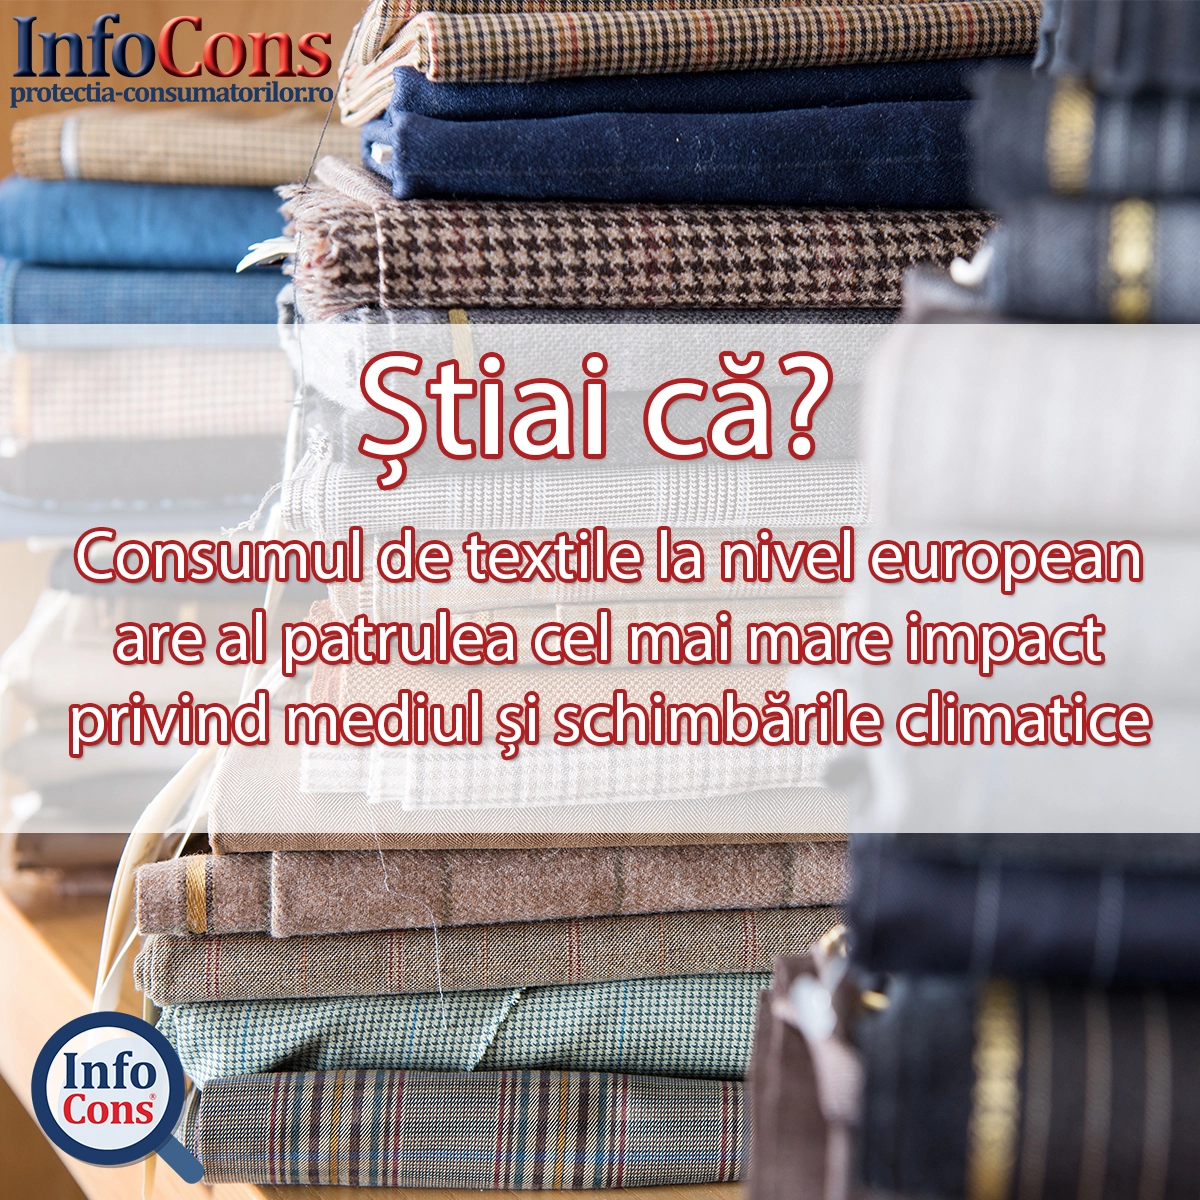 Stiati ca… Consumul de textile la nivel european are al patrulea cel mai mare impact privind mediul și schimbările climatice.?!